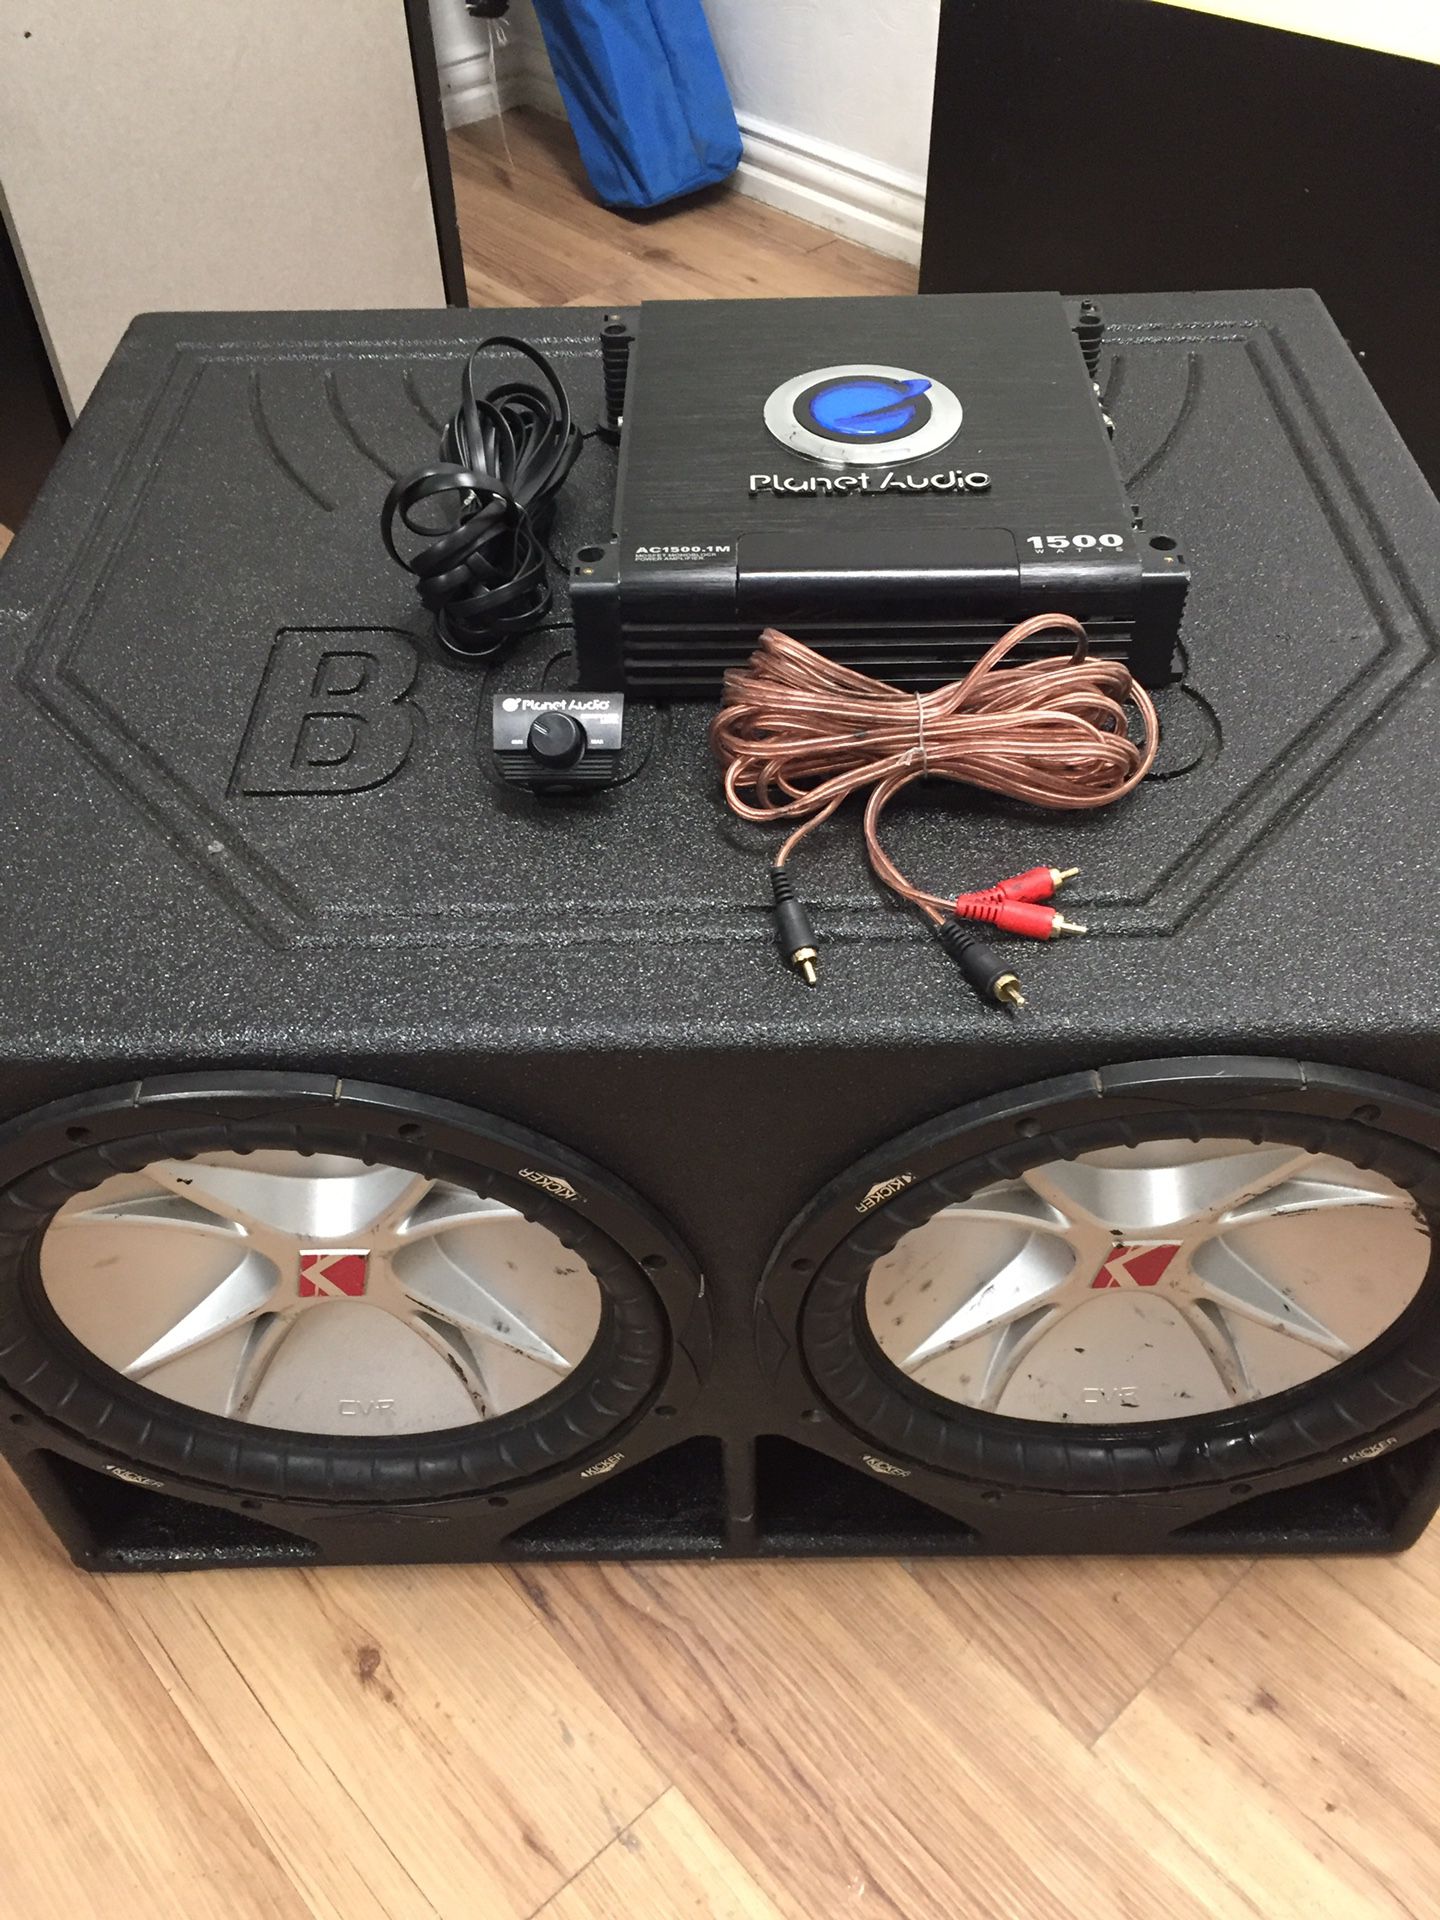 2 kicker cvr 12”s in Pro Box &1500.1 watt Planet Audio amp